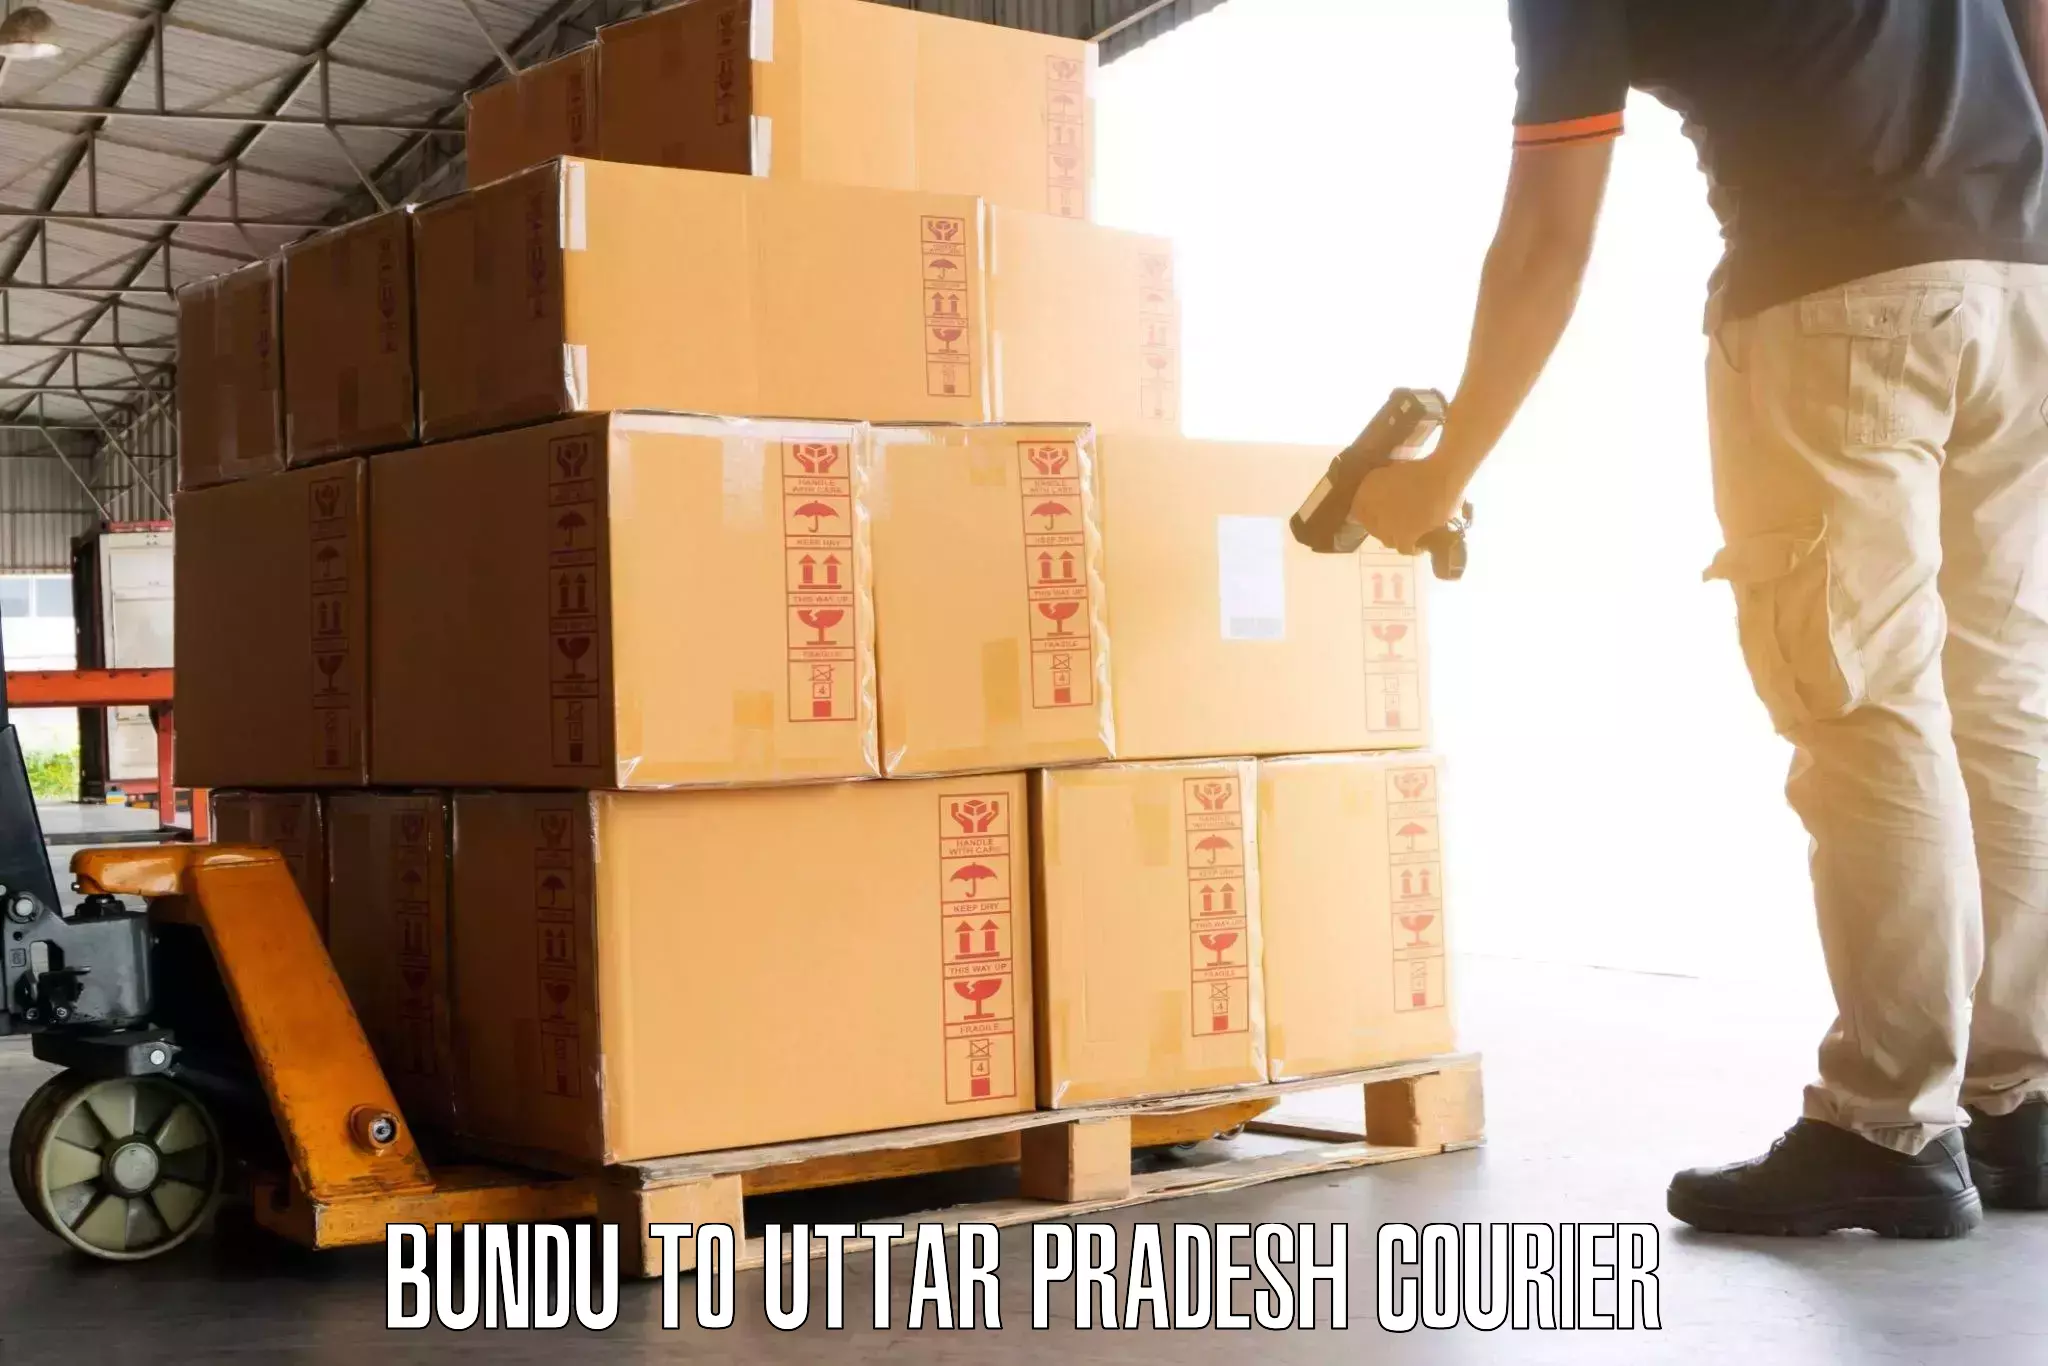 Luggage dispatch service Bundu to Sonbhadra